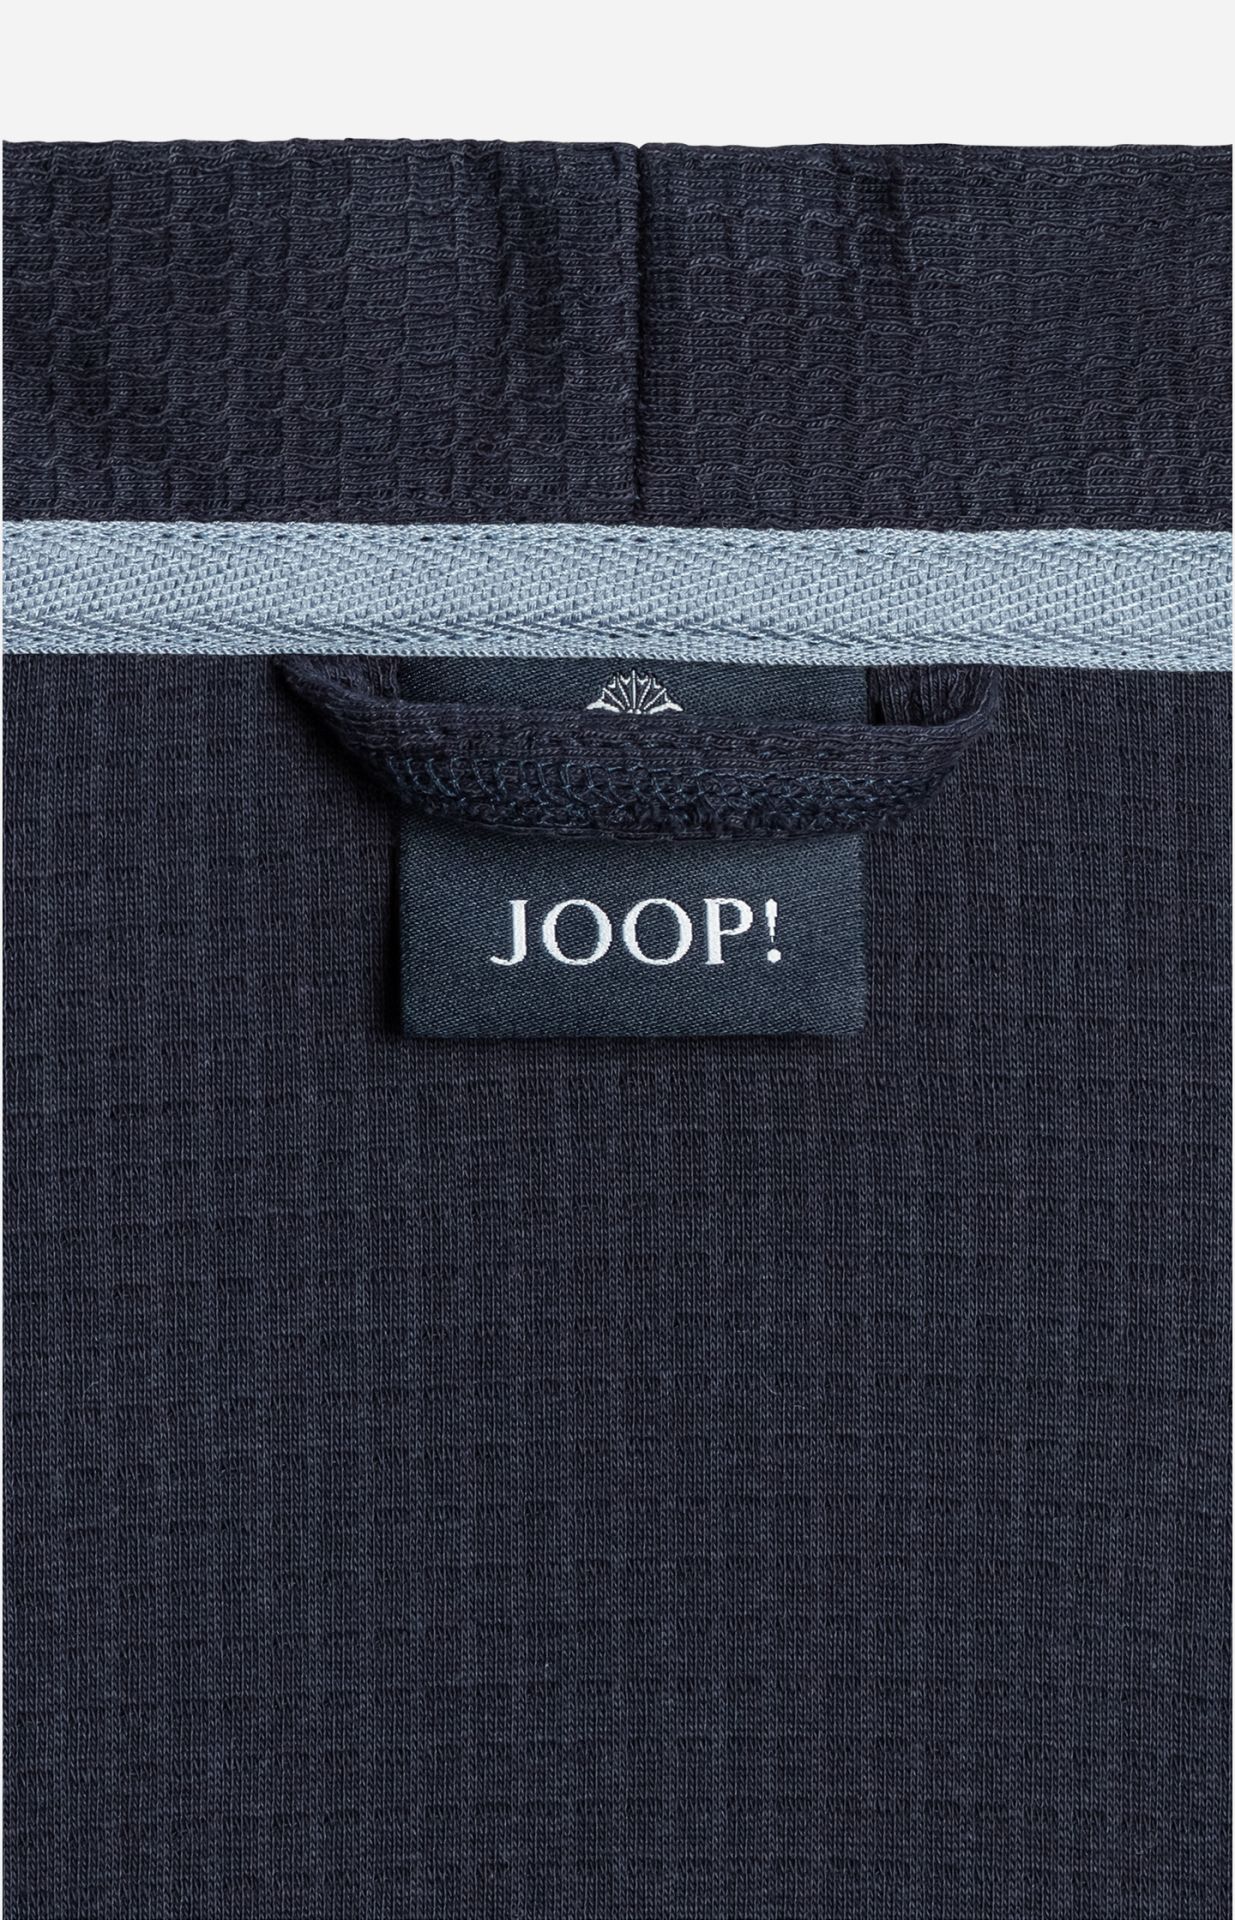 JOOP! Bademantel Uni Pique Damen-Kimono Gr.42 blau | 572017001 | Damen Bademäntel